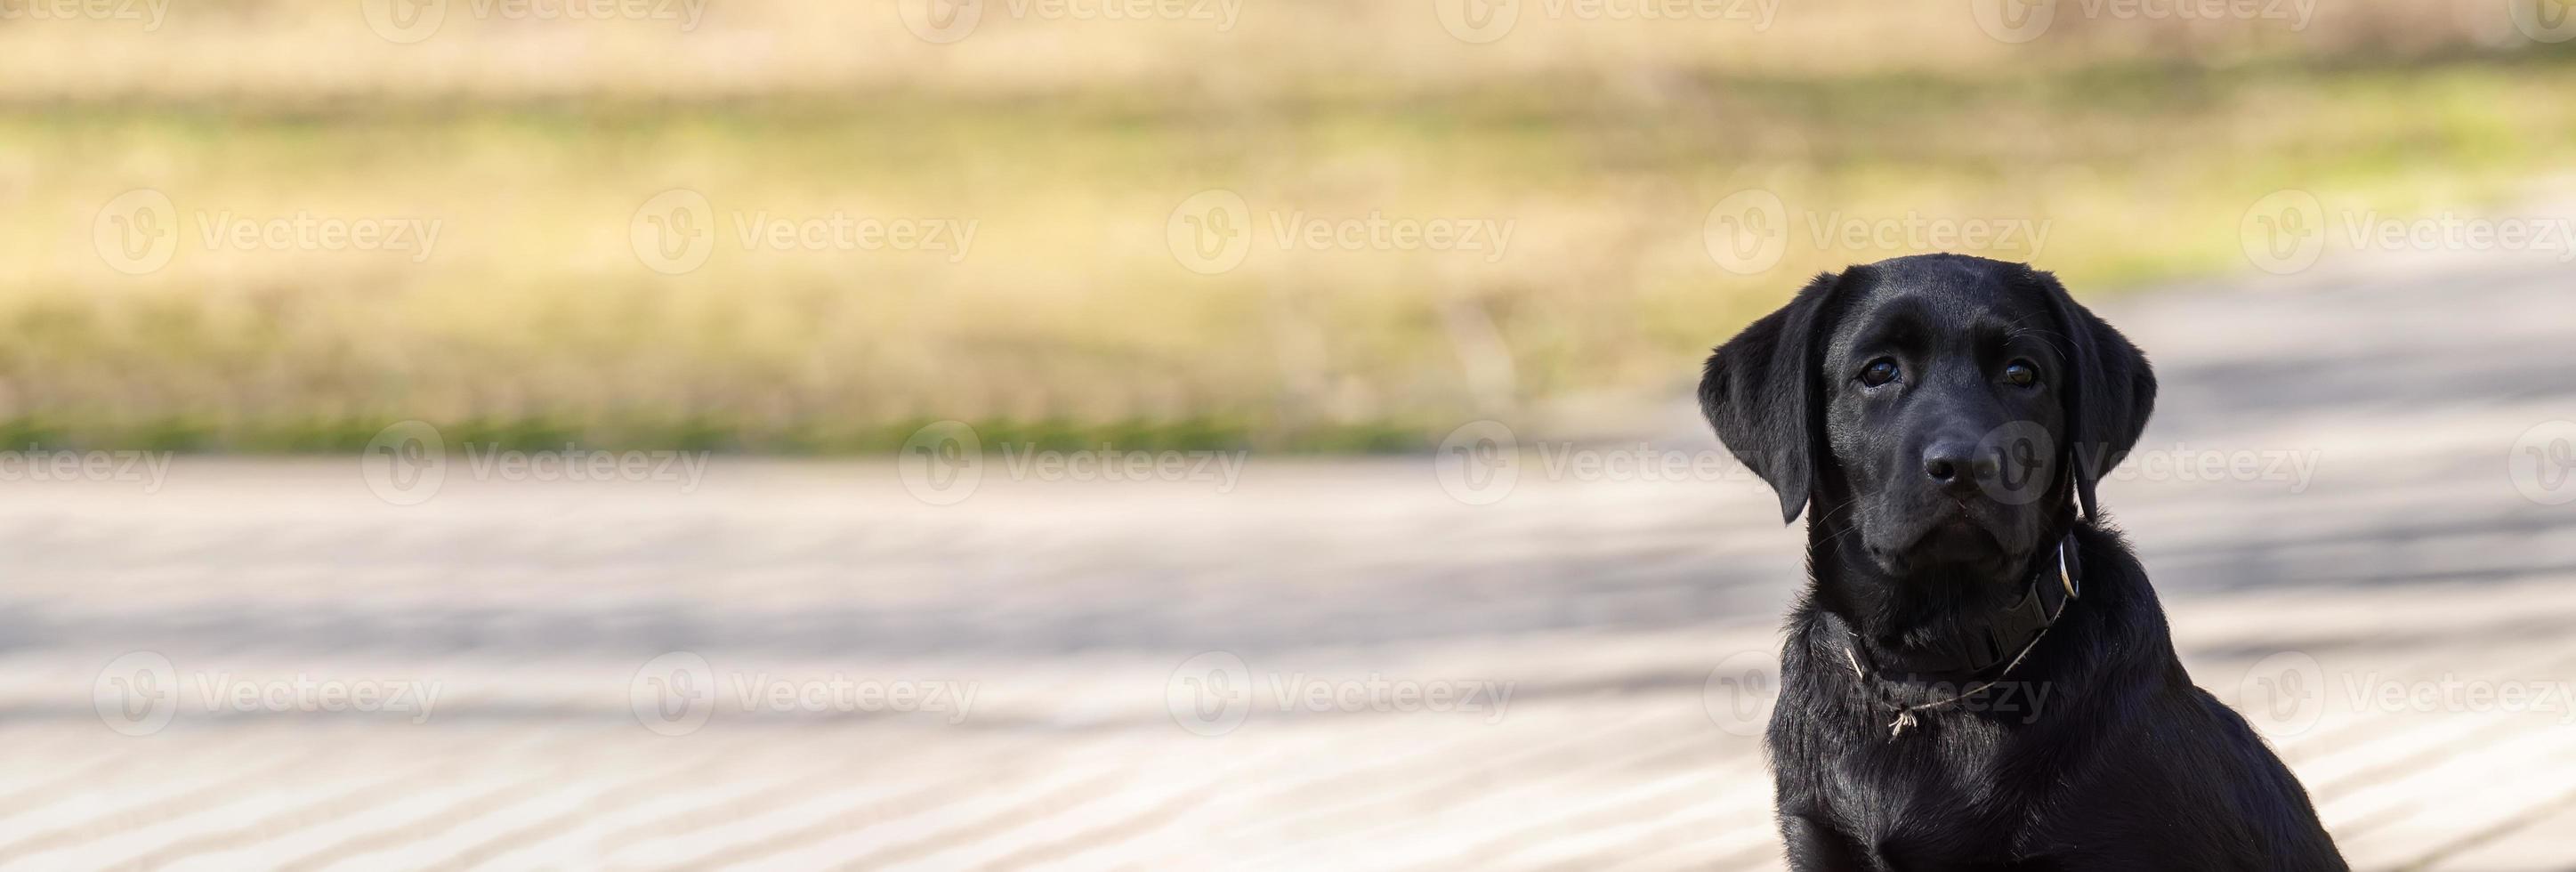 filhote de labrador retriever na grama foto